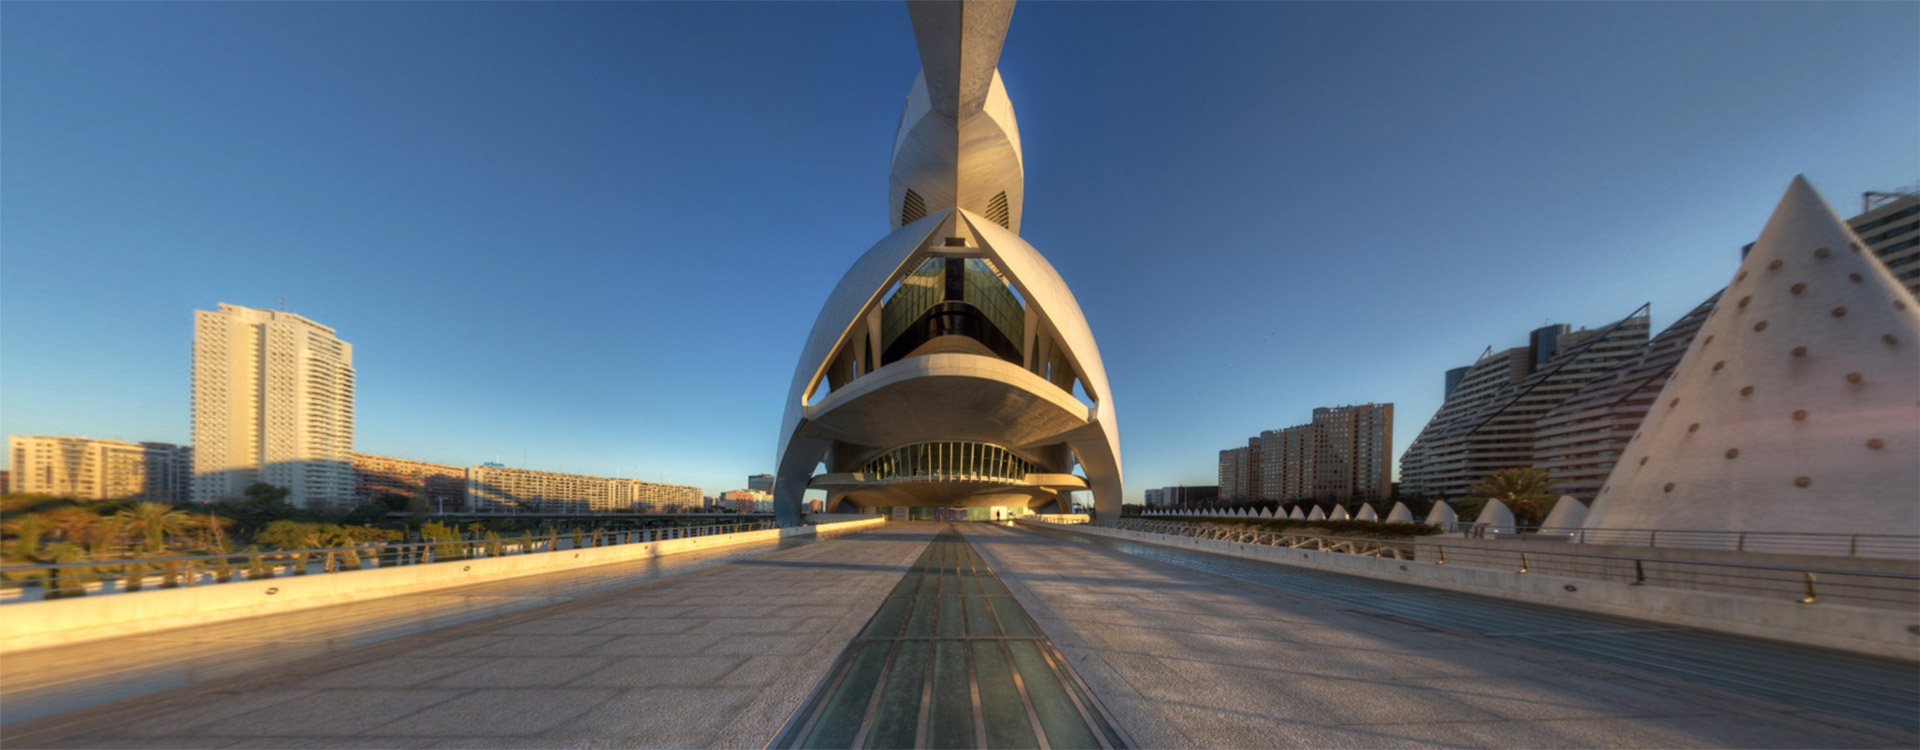 Valencia - City Of Arts & Sciences - Rod Edwards Photography